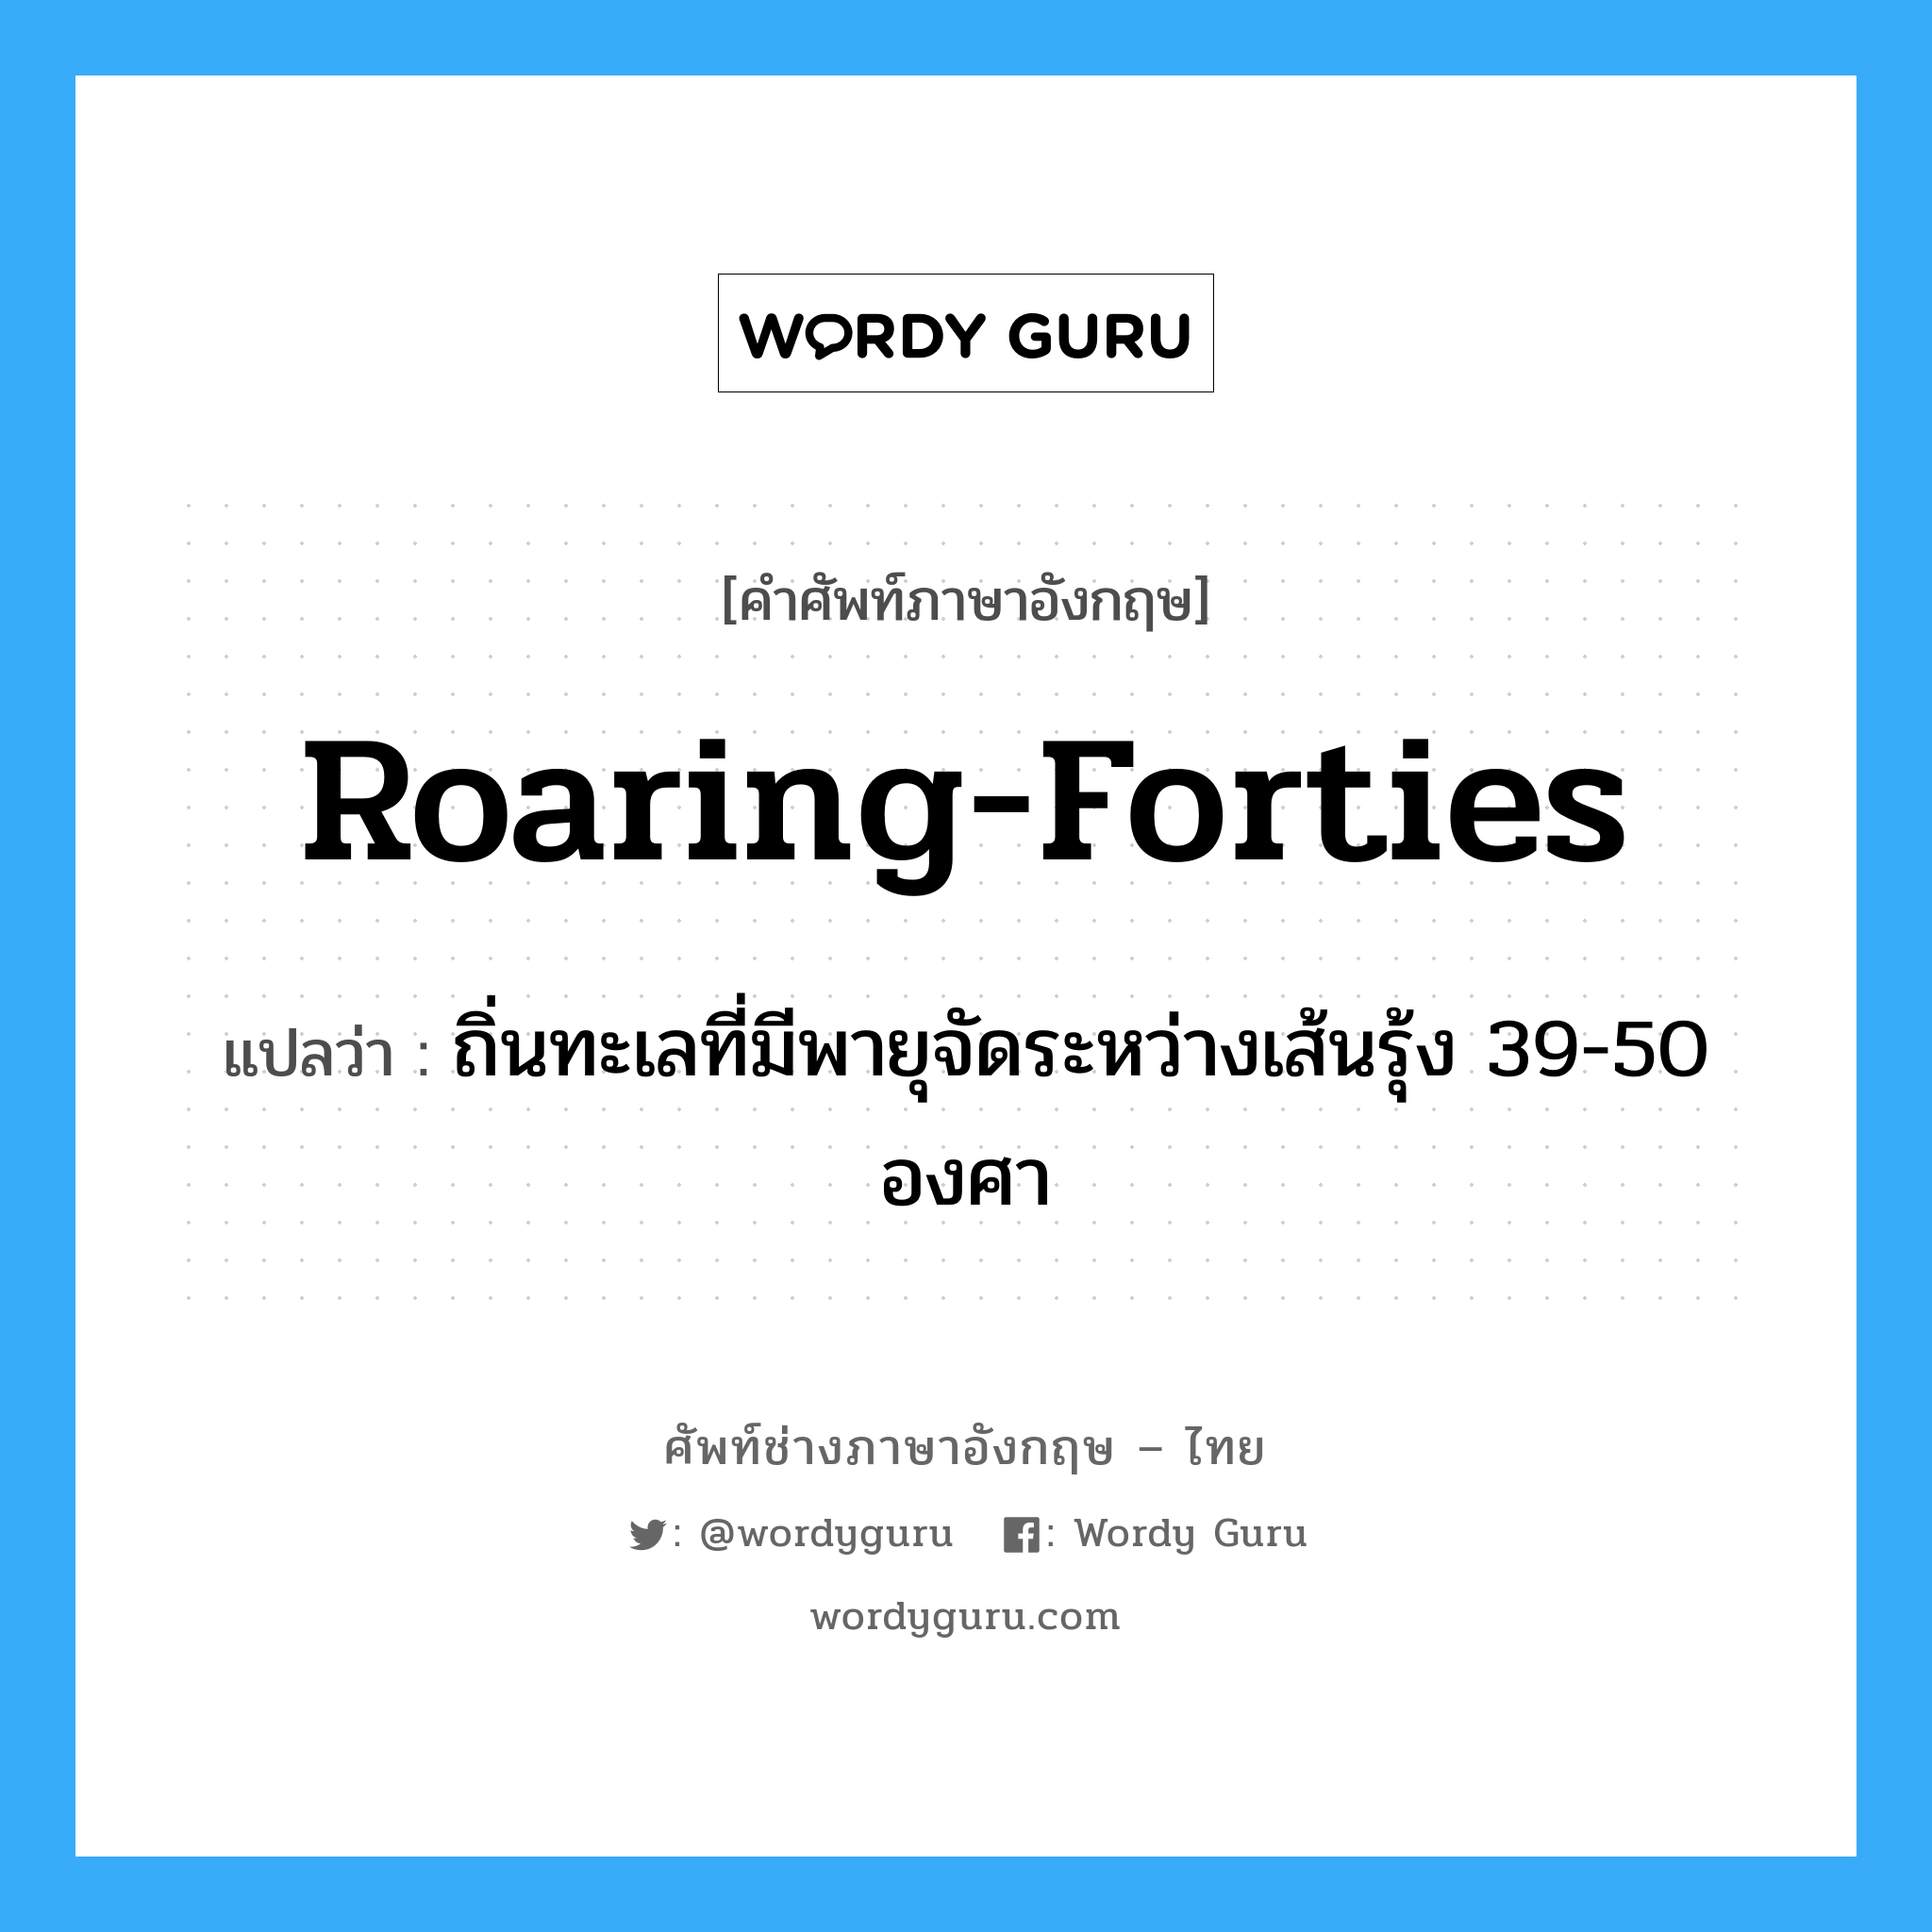 roaring-forties แปลว่า?, คำศัพท์ช่างภาษาอังกฤษ - ไทย roaring-forties คำศัพท์ภาษาอังกฤษ roaring-forties แปลว่า ถิ่นทะเลที่มีพายุจัดระหว่างเส้นรุ้ง 39-50 องศา